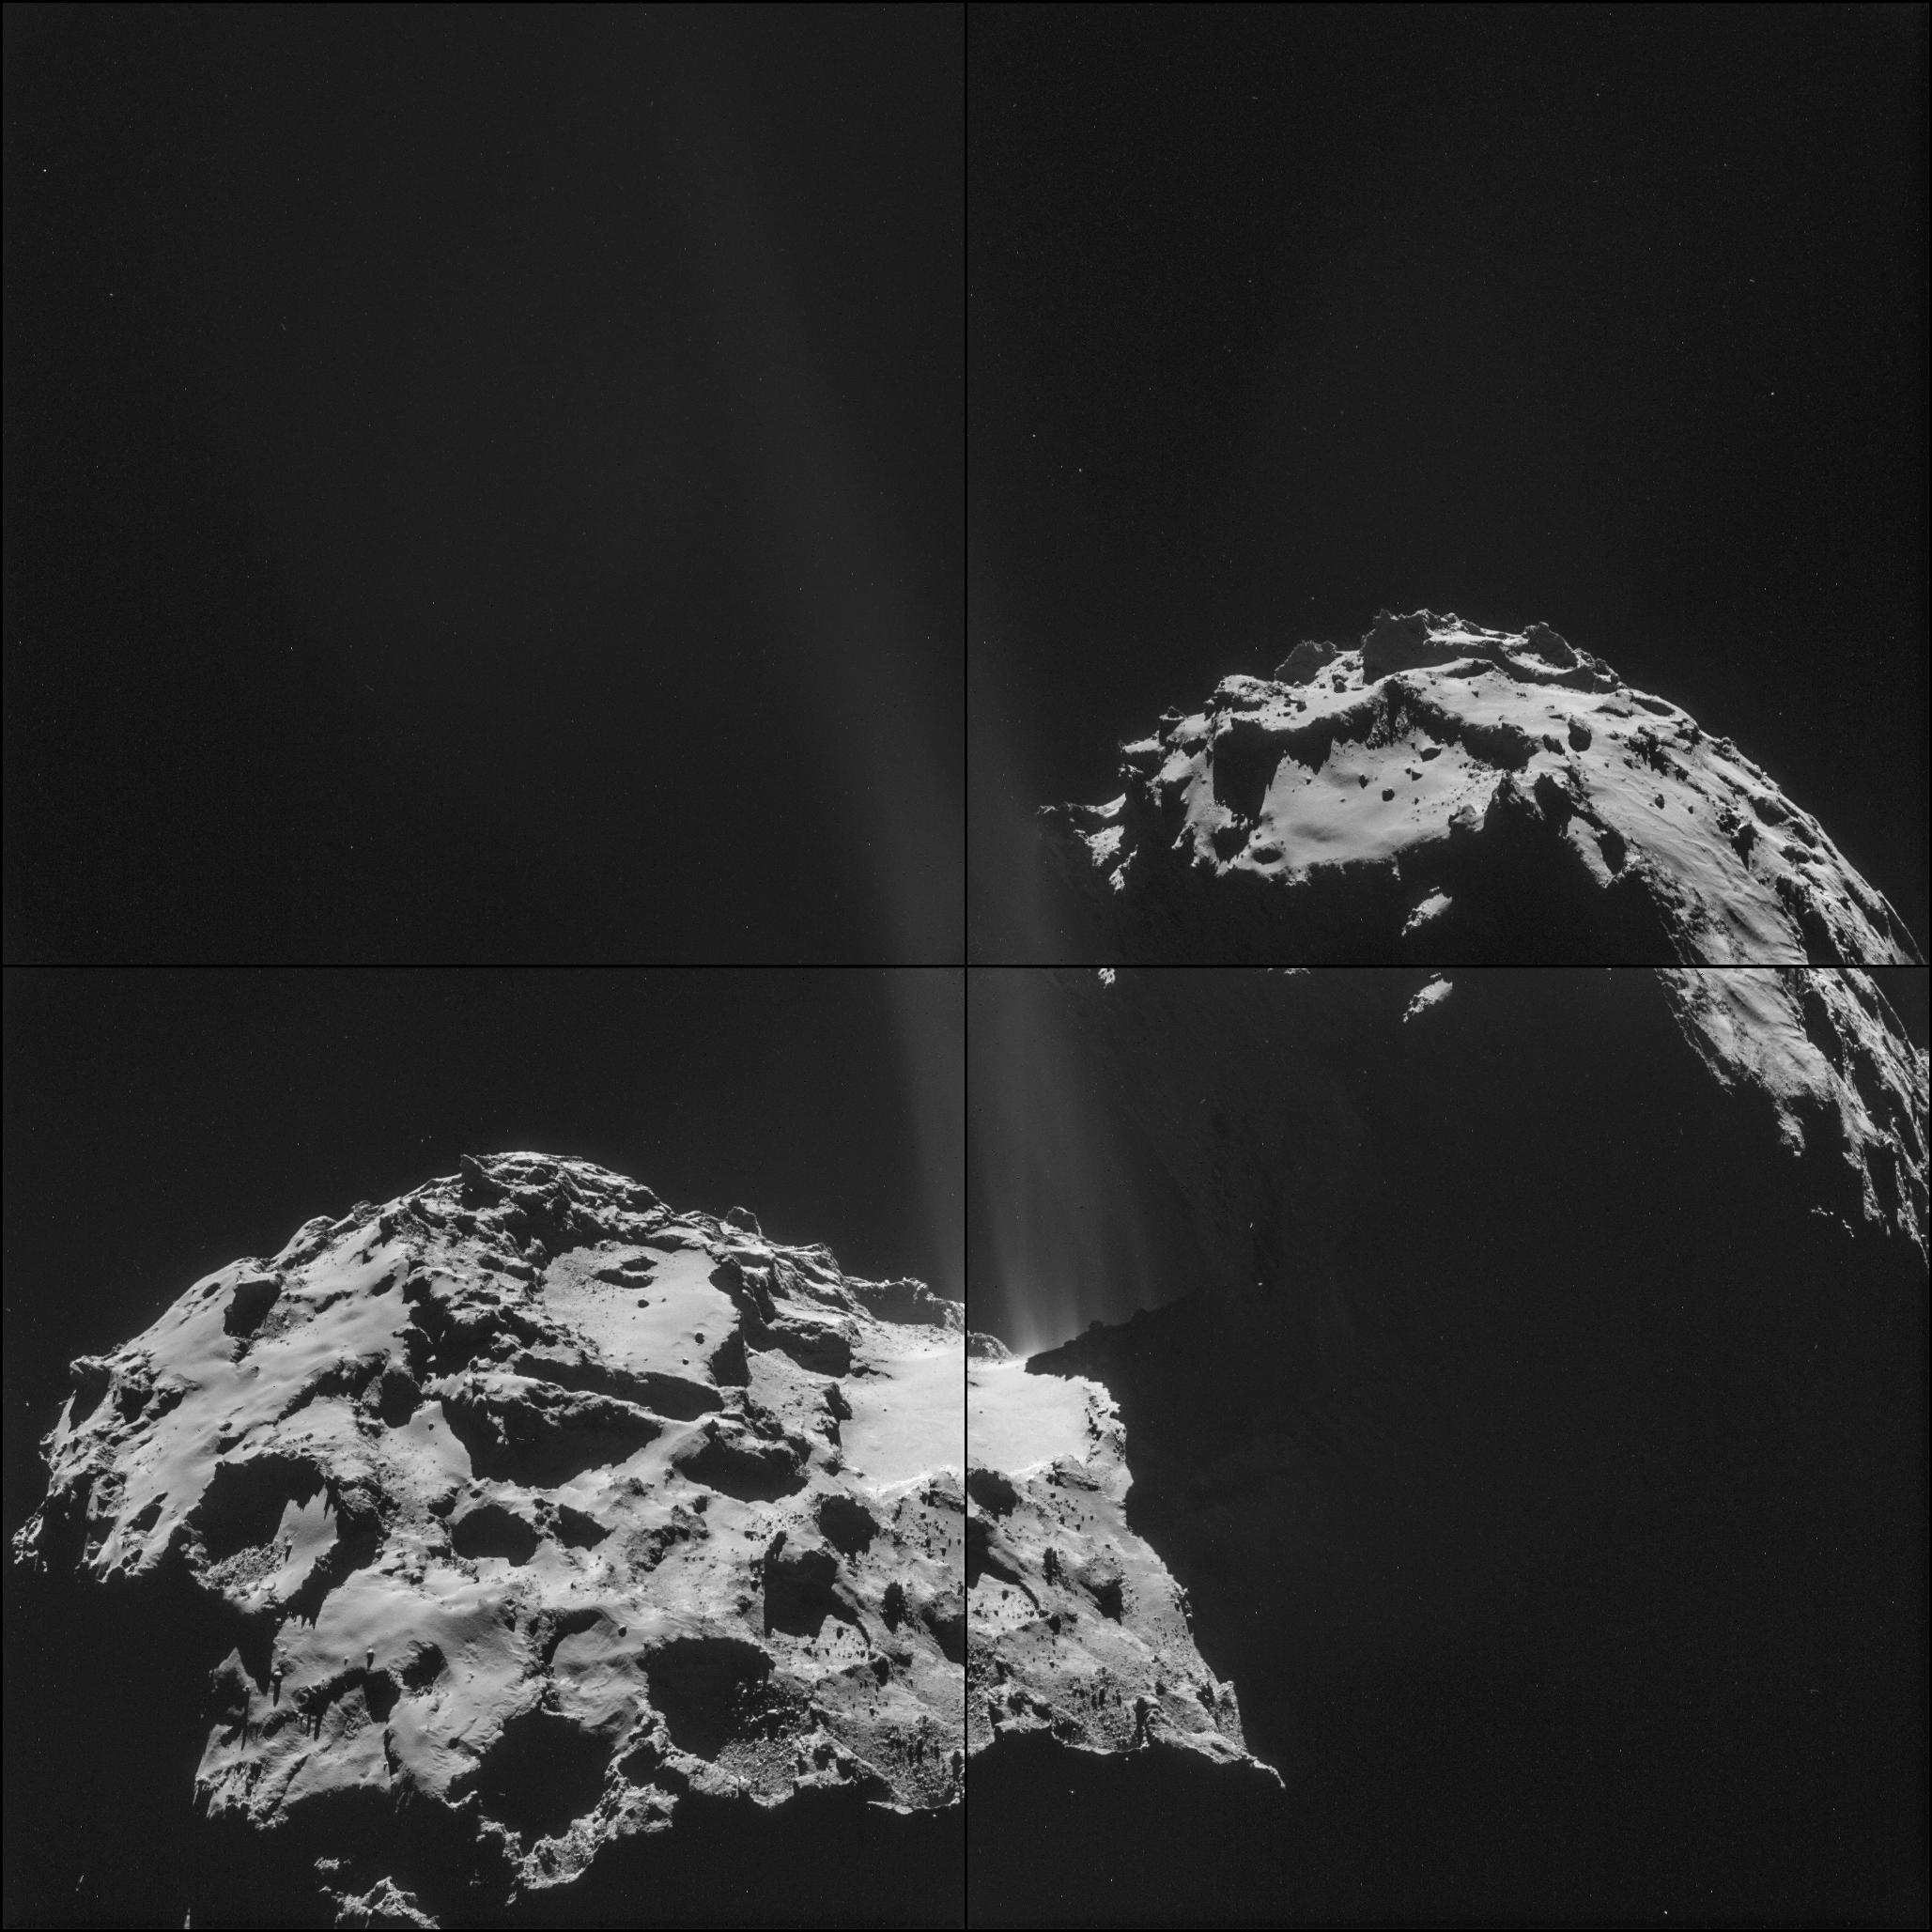 Mosaïque de 4 images de la comète 67P/Churyumov-Gerasimenko prises en l'espace de 20 mn, le 26 septembre à 26,3 km seulement du noyau. On peut observer que le dégazage le plus important provient de la région dite du cou lequel soude les deux lobes caractéristiques de cet astre d’environ 4 km de longueur. © Esa, Rosetta, NavCam